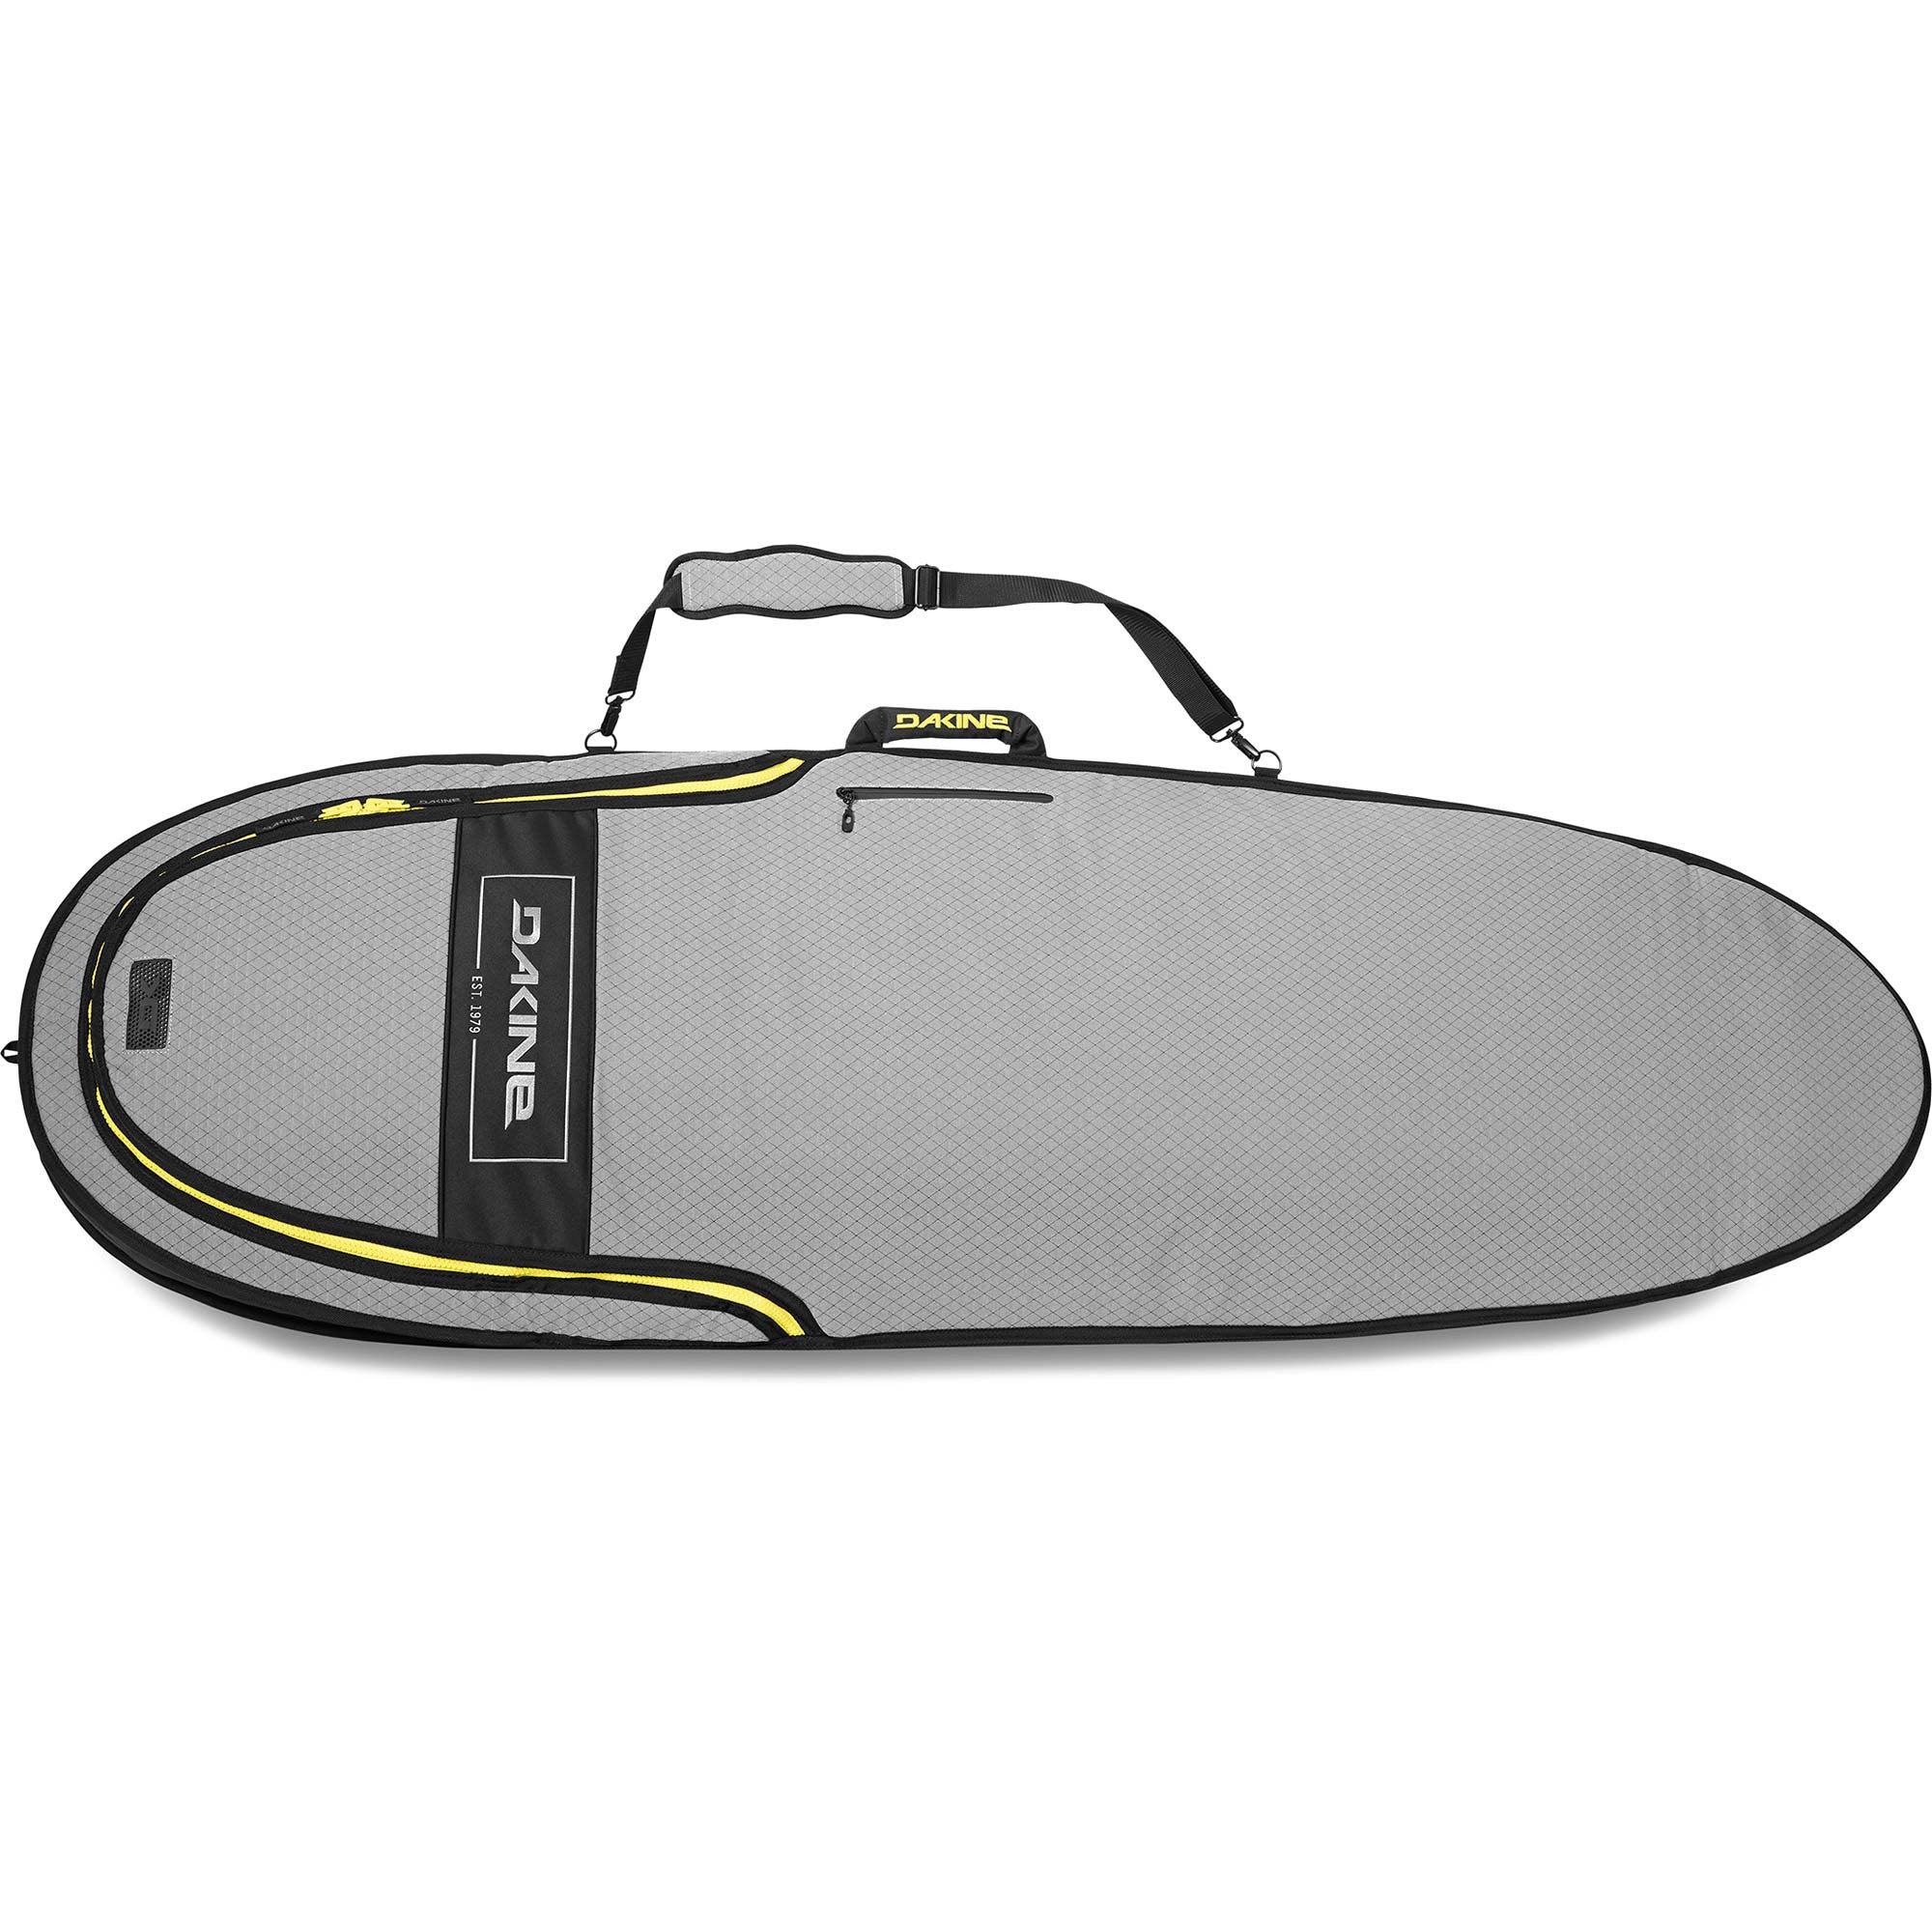 Dakine Mission Hybrid Boardbag 007-Carbon 6ft6in